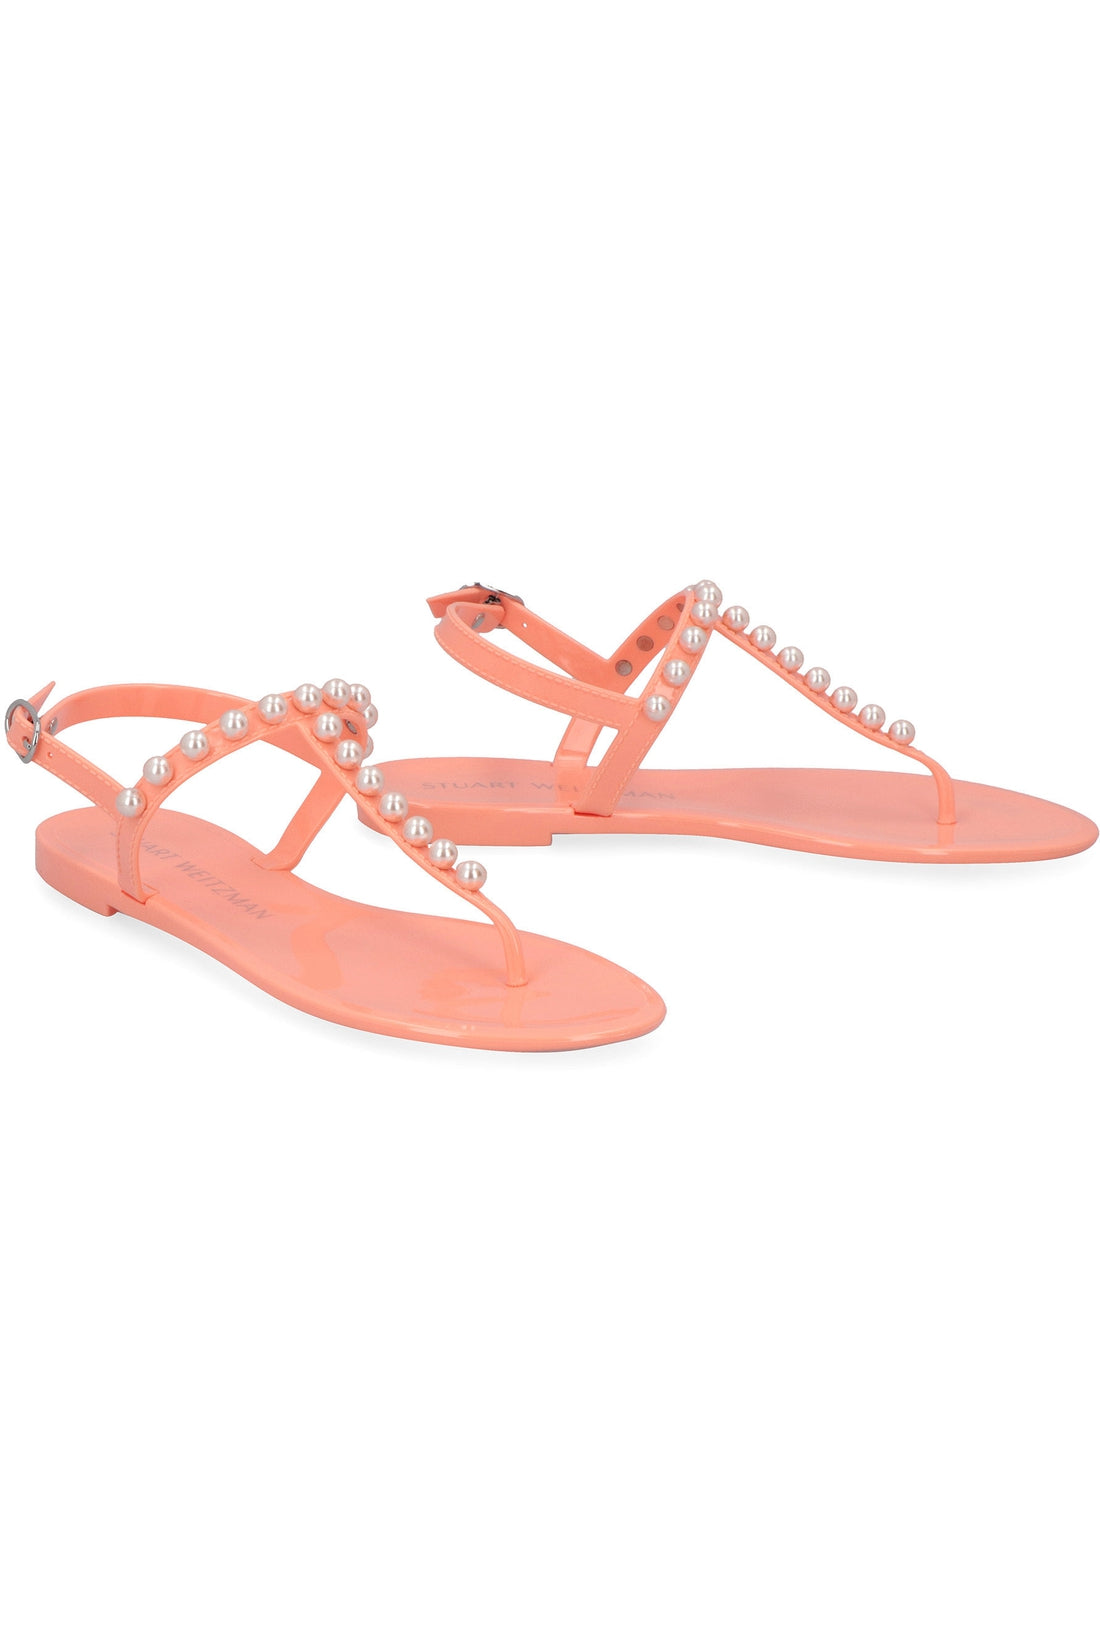 Stuart Weitzman-OUTLET-SALE-Jelly flat sandals-ARCHIVIST